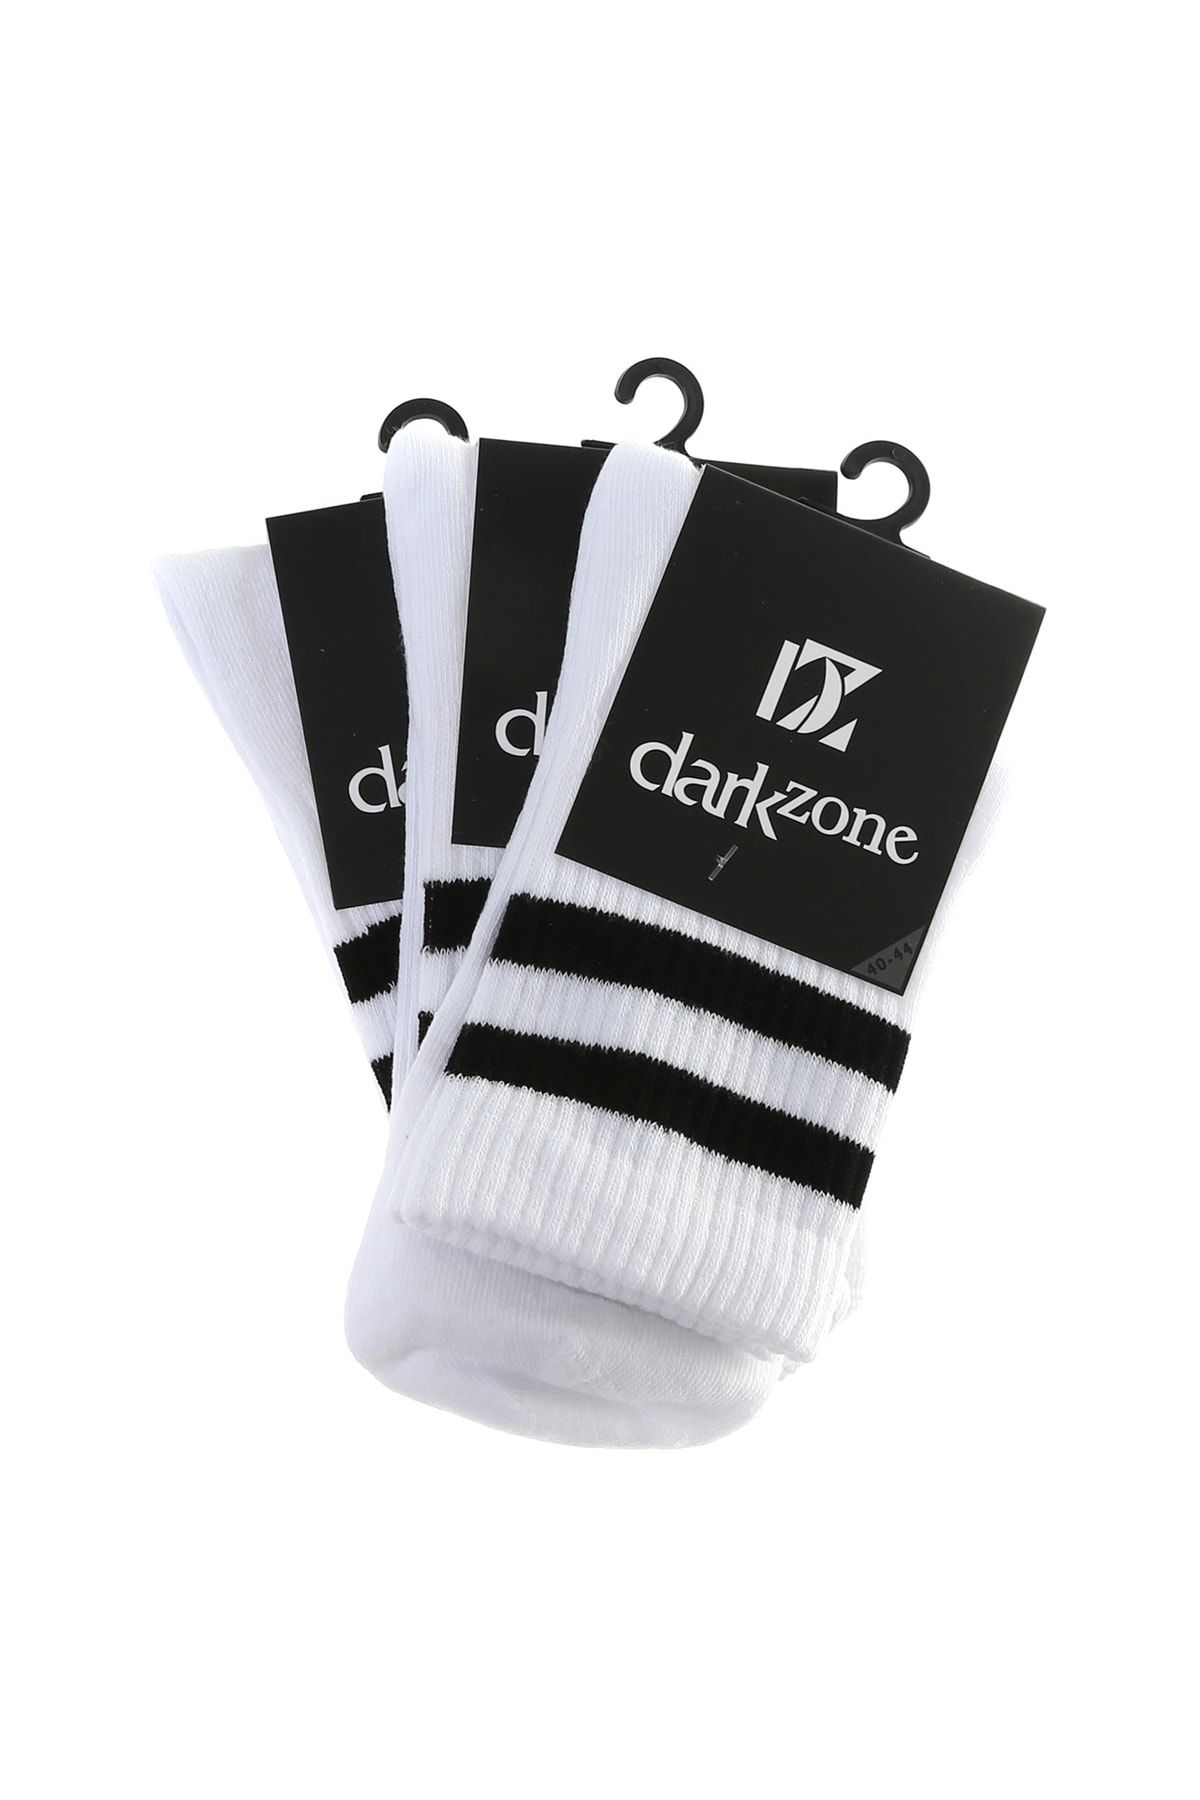 Darkzone Çorap, 40-44, Beyaz